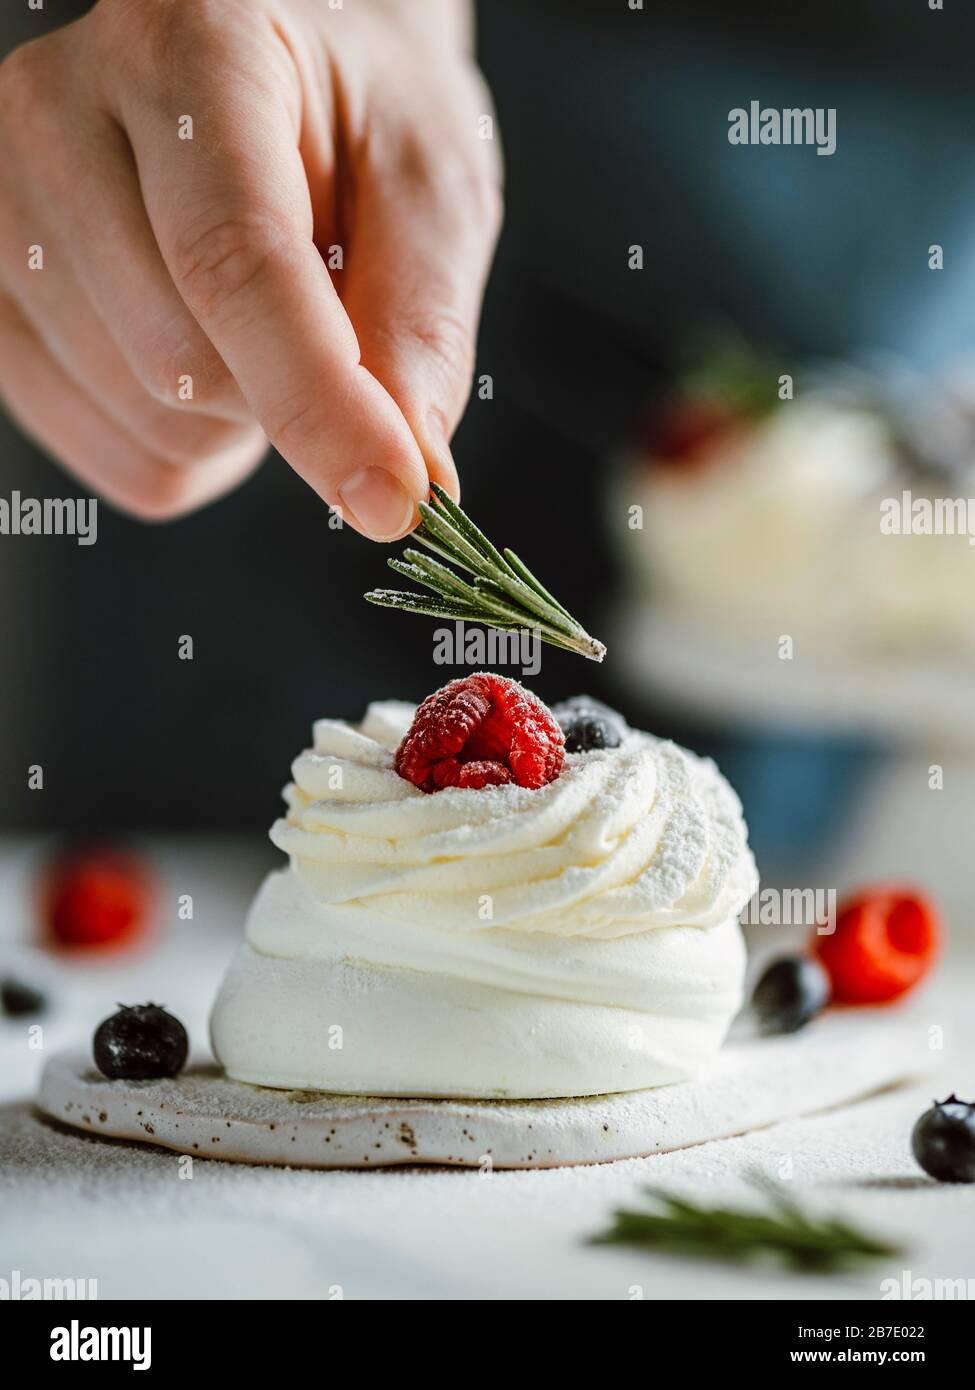 Le dita femmina trattengono il rosmarino per decorare la mini torta Pavlova con frutti di bosco freschi. Primo piano di composizione verticale con piano in marmo bianco e retro scuro Foto Stock